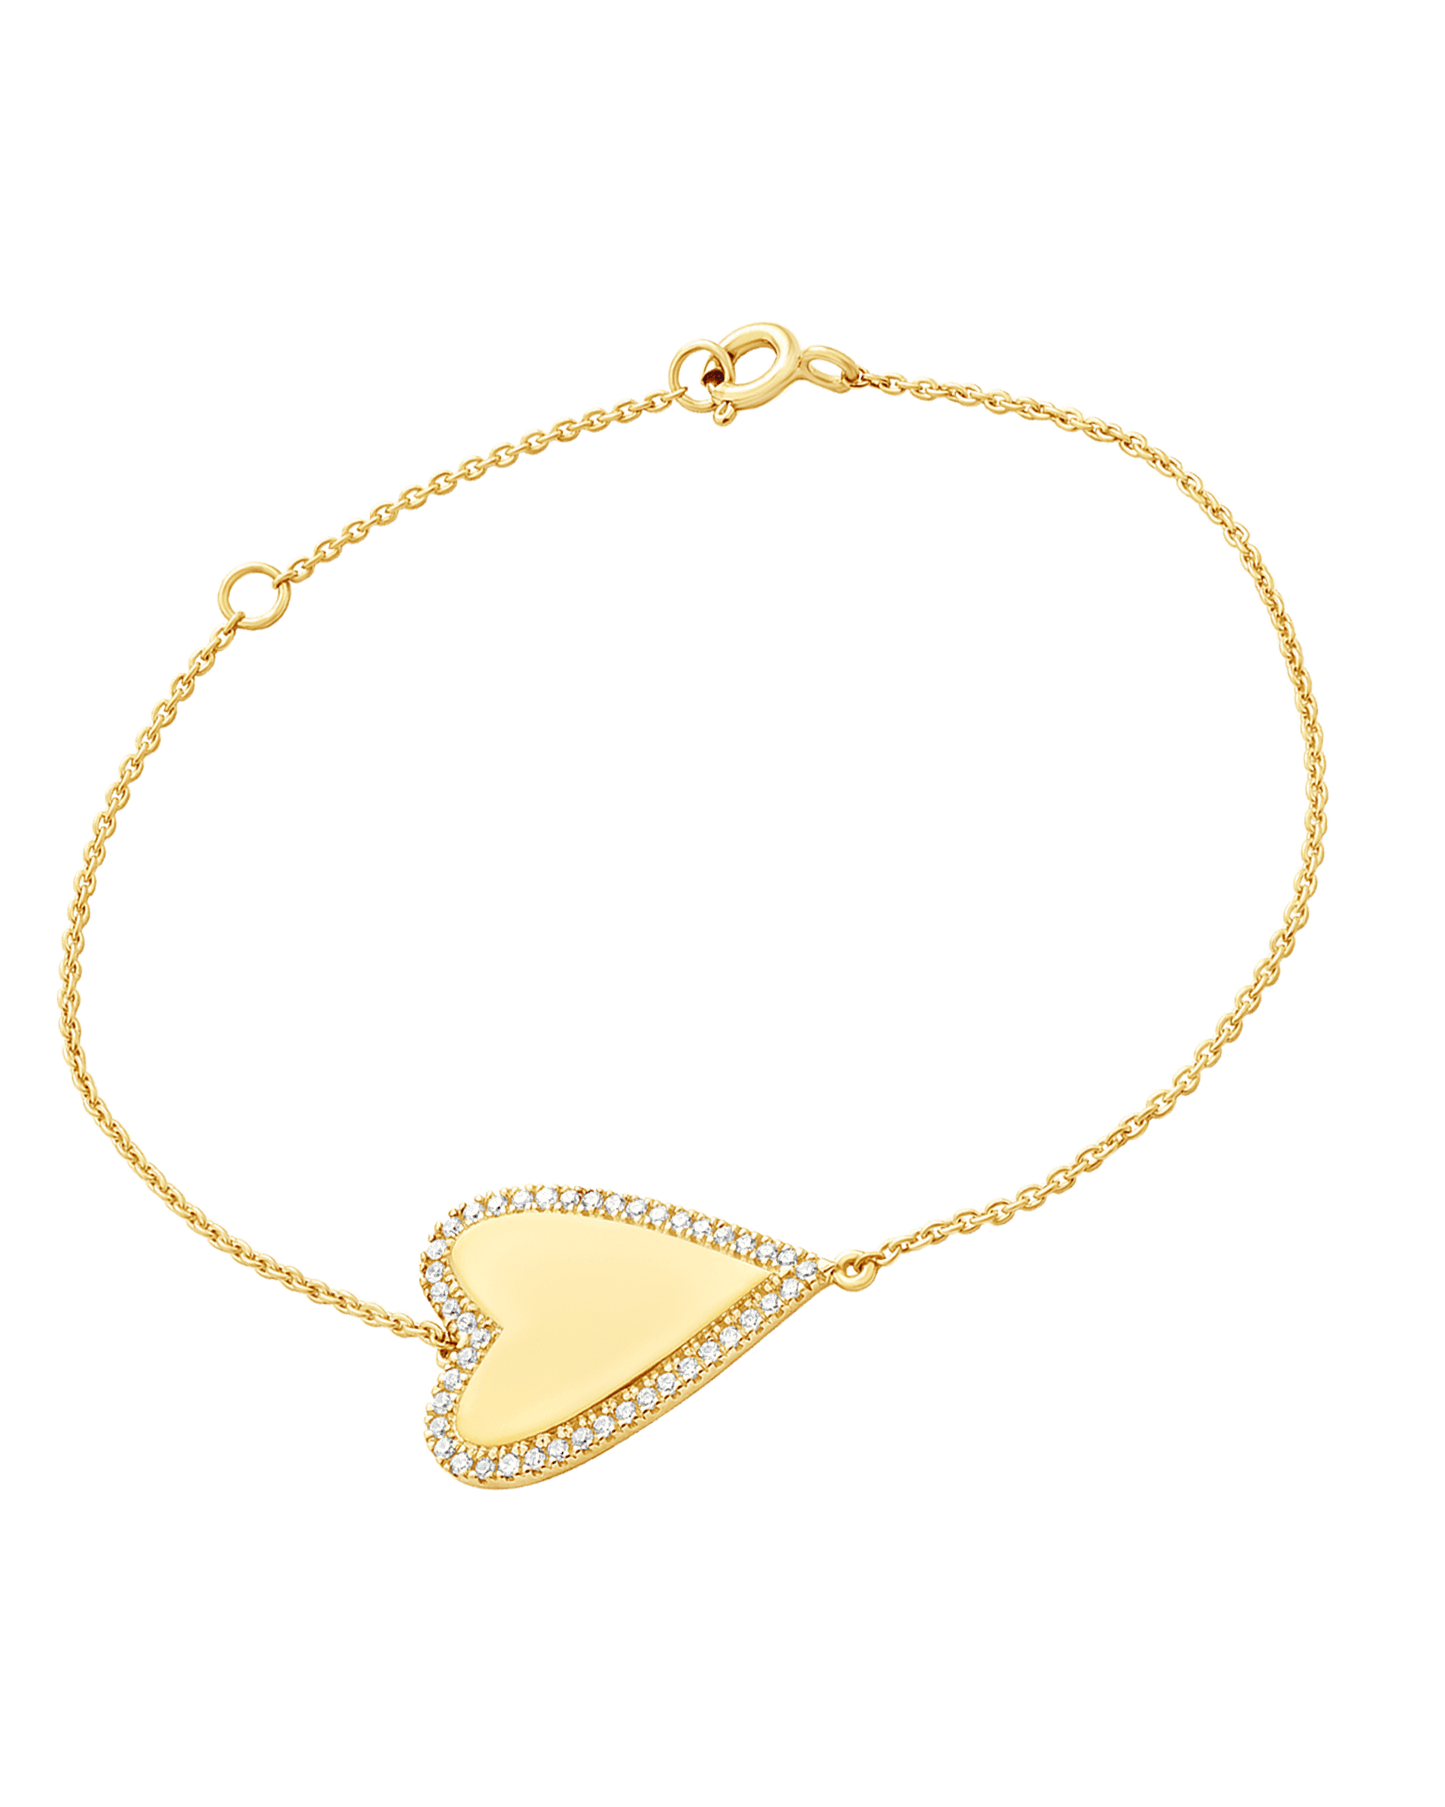 Outlined Diamond Heart Bracelet - 14K Yellow Gold Bracelets magal-dev 